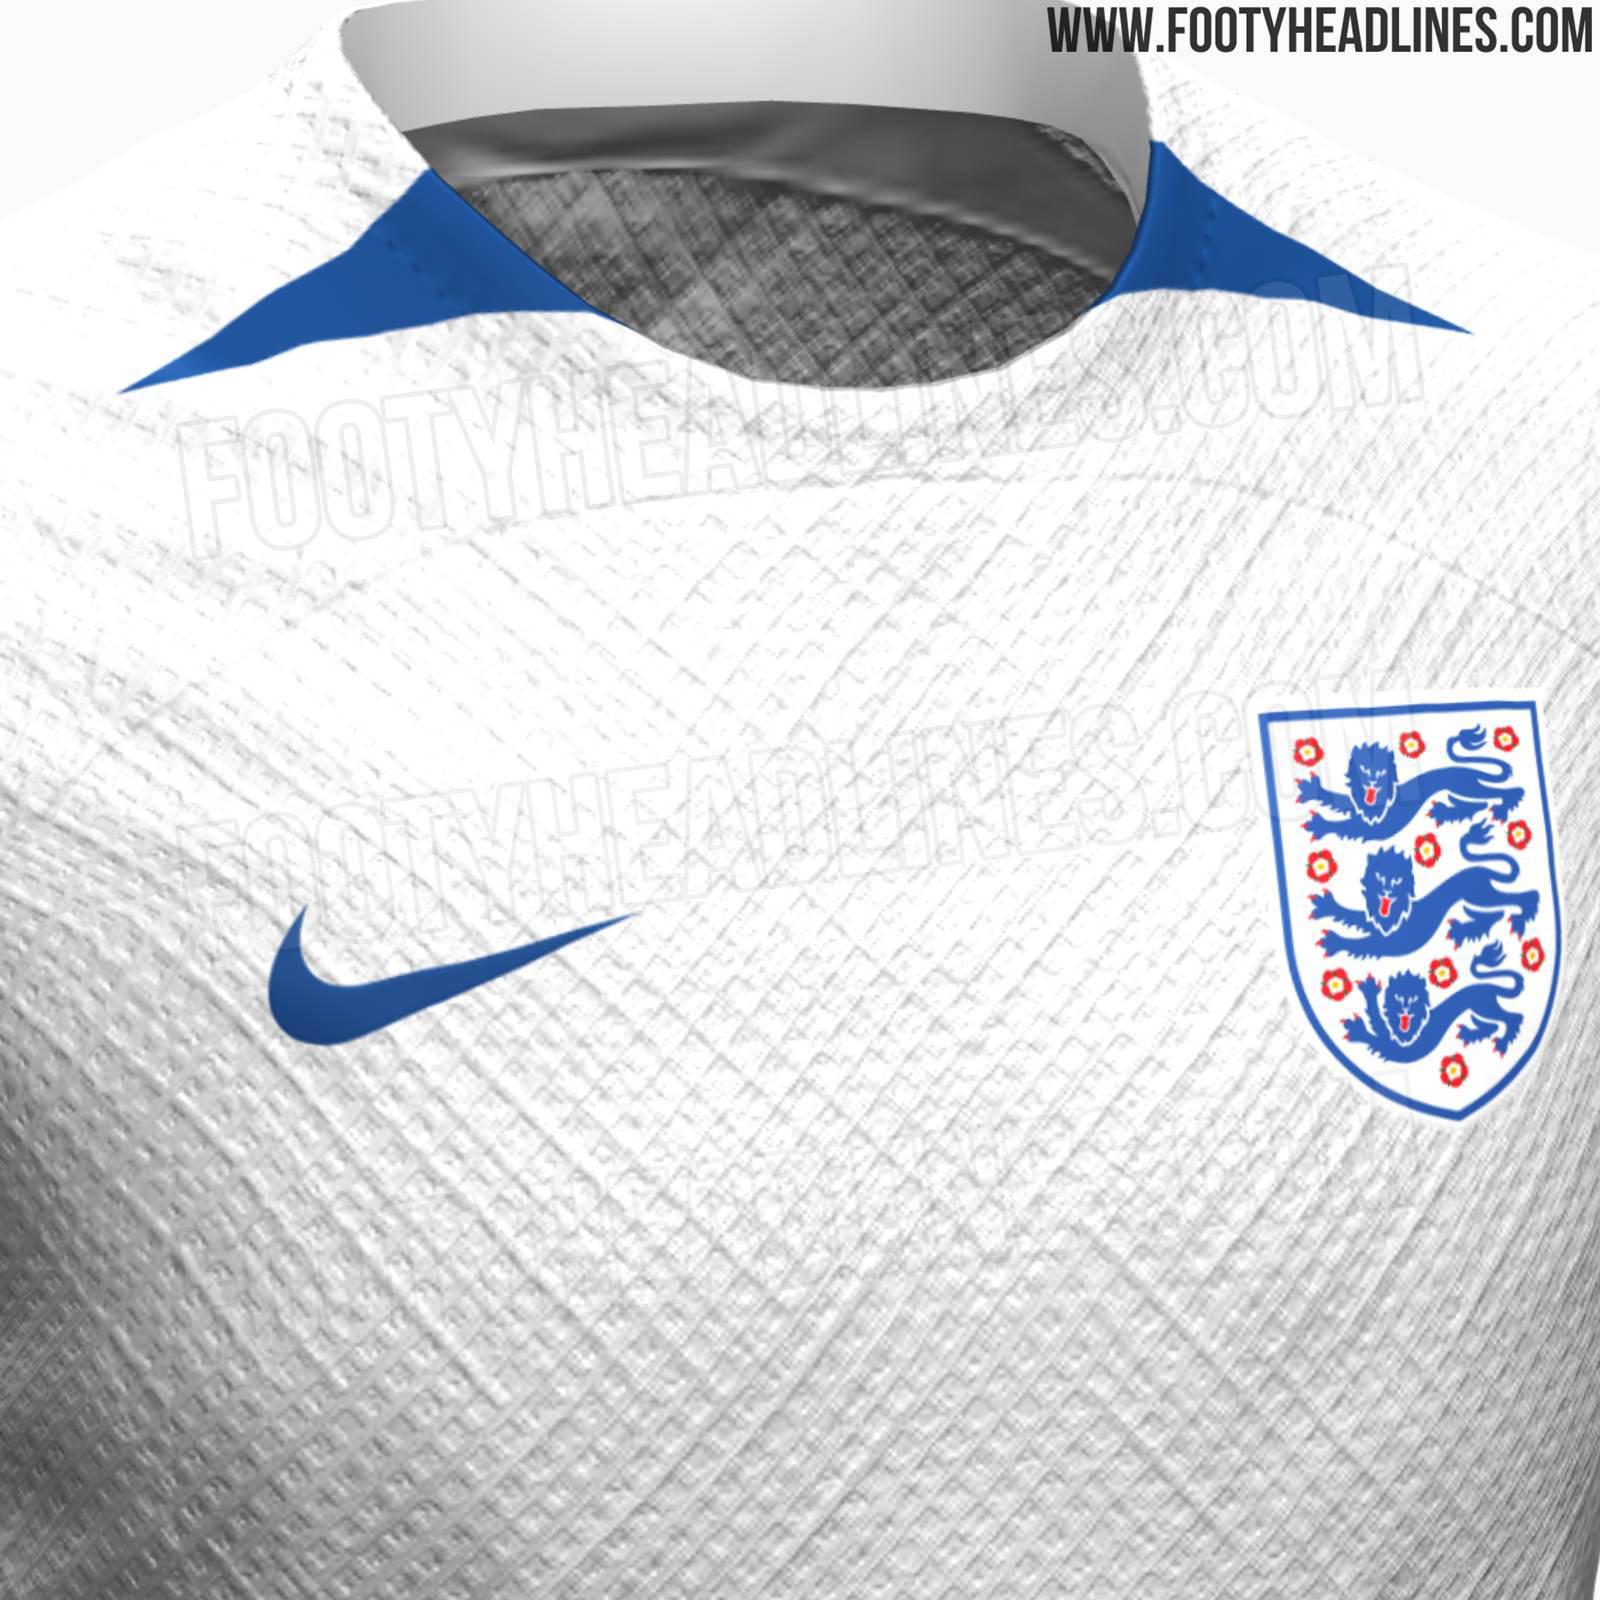 英格兰女足今夏世界杯主场球衣曝光，主白色搭配蓝色细节设计，简约风格。#三狮军团#(2)